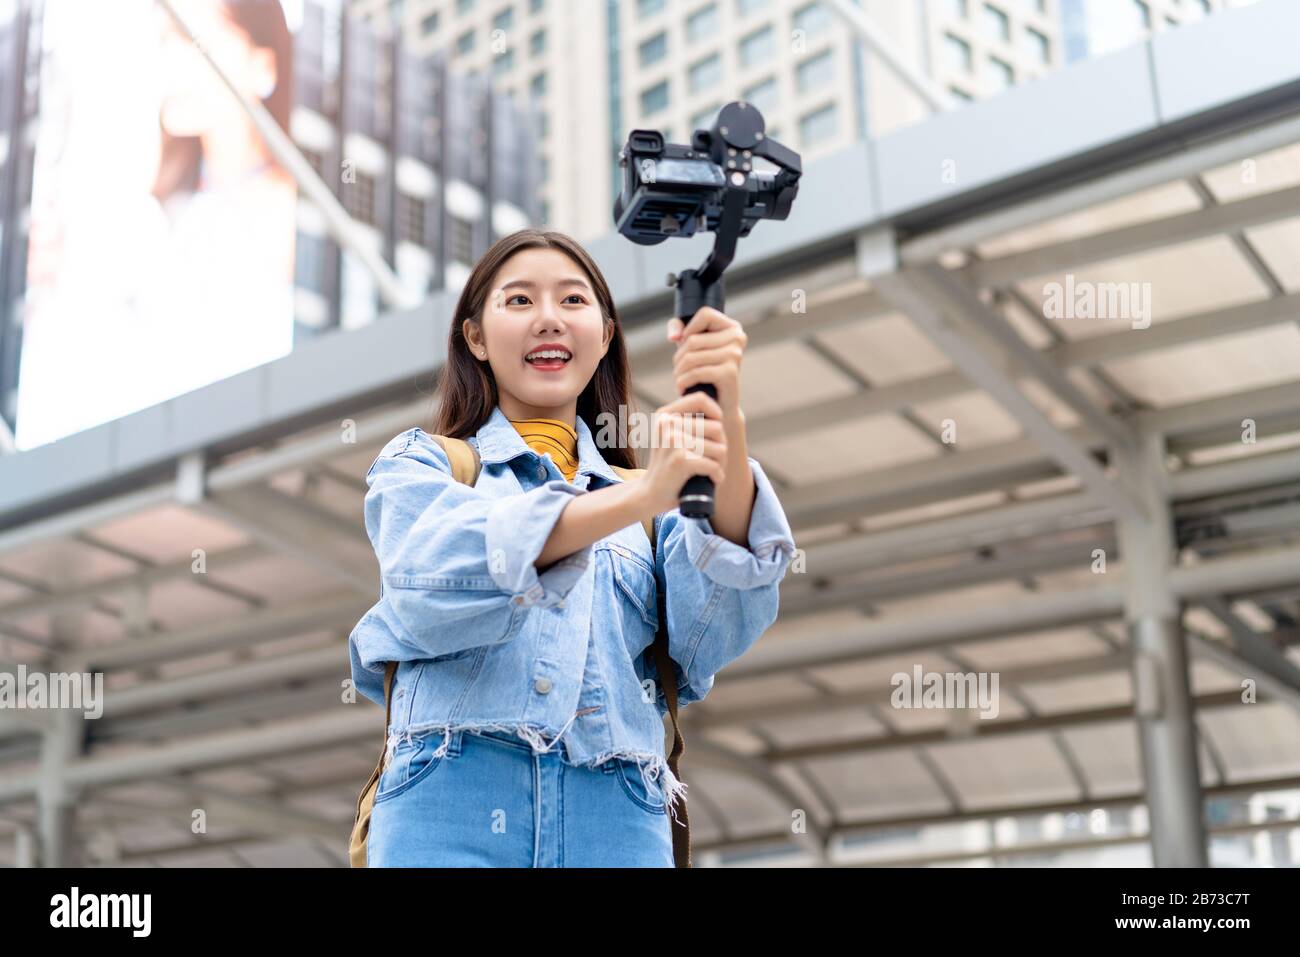 Lächelnd schöne asiatische Frau Reise-Vlogger mit selfie-video in der Stadt Stockfoto